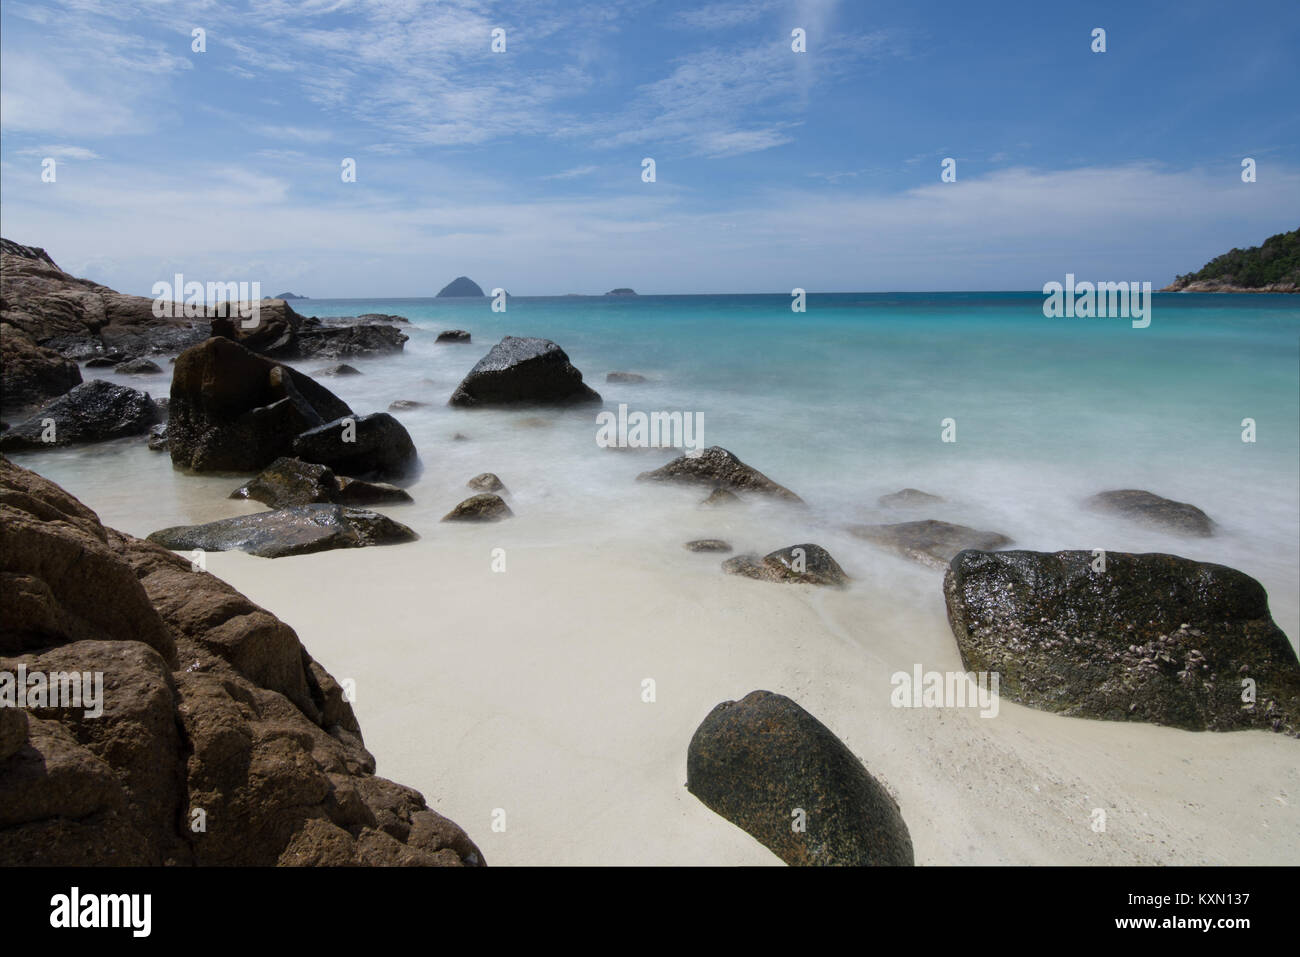 Una lunga esposizione delle onde di luce di laminazione su rocce di grandi dimensioni in un idilic spiaggia di sabbia bianca in una piccola baia con piccole isole all'orizzonte. Foto Stock